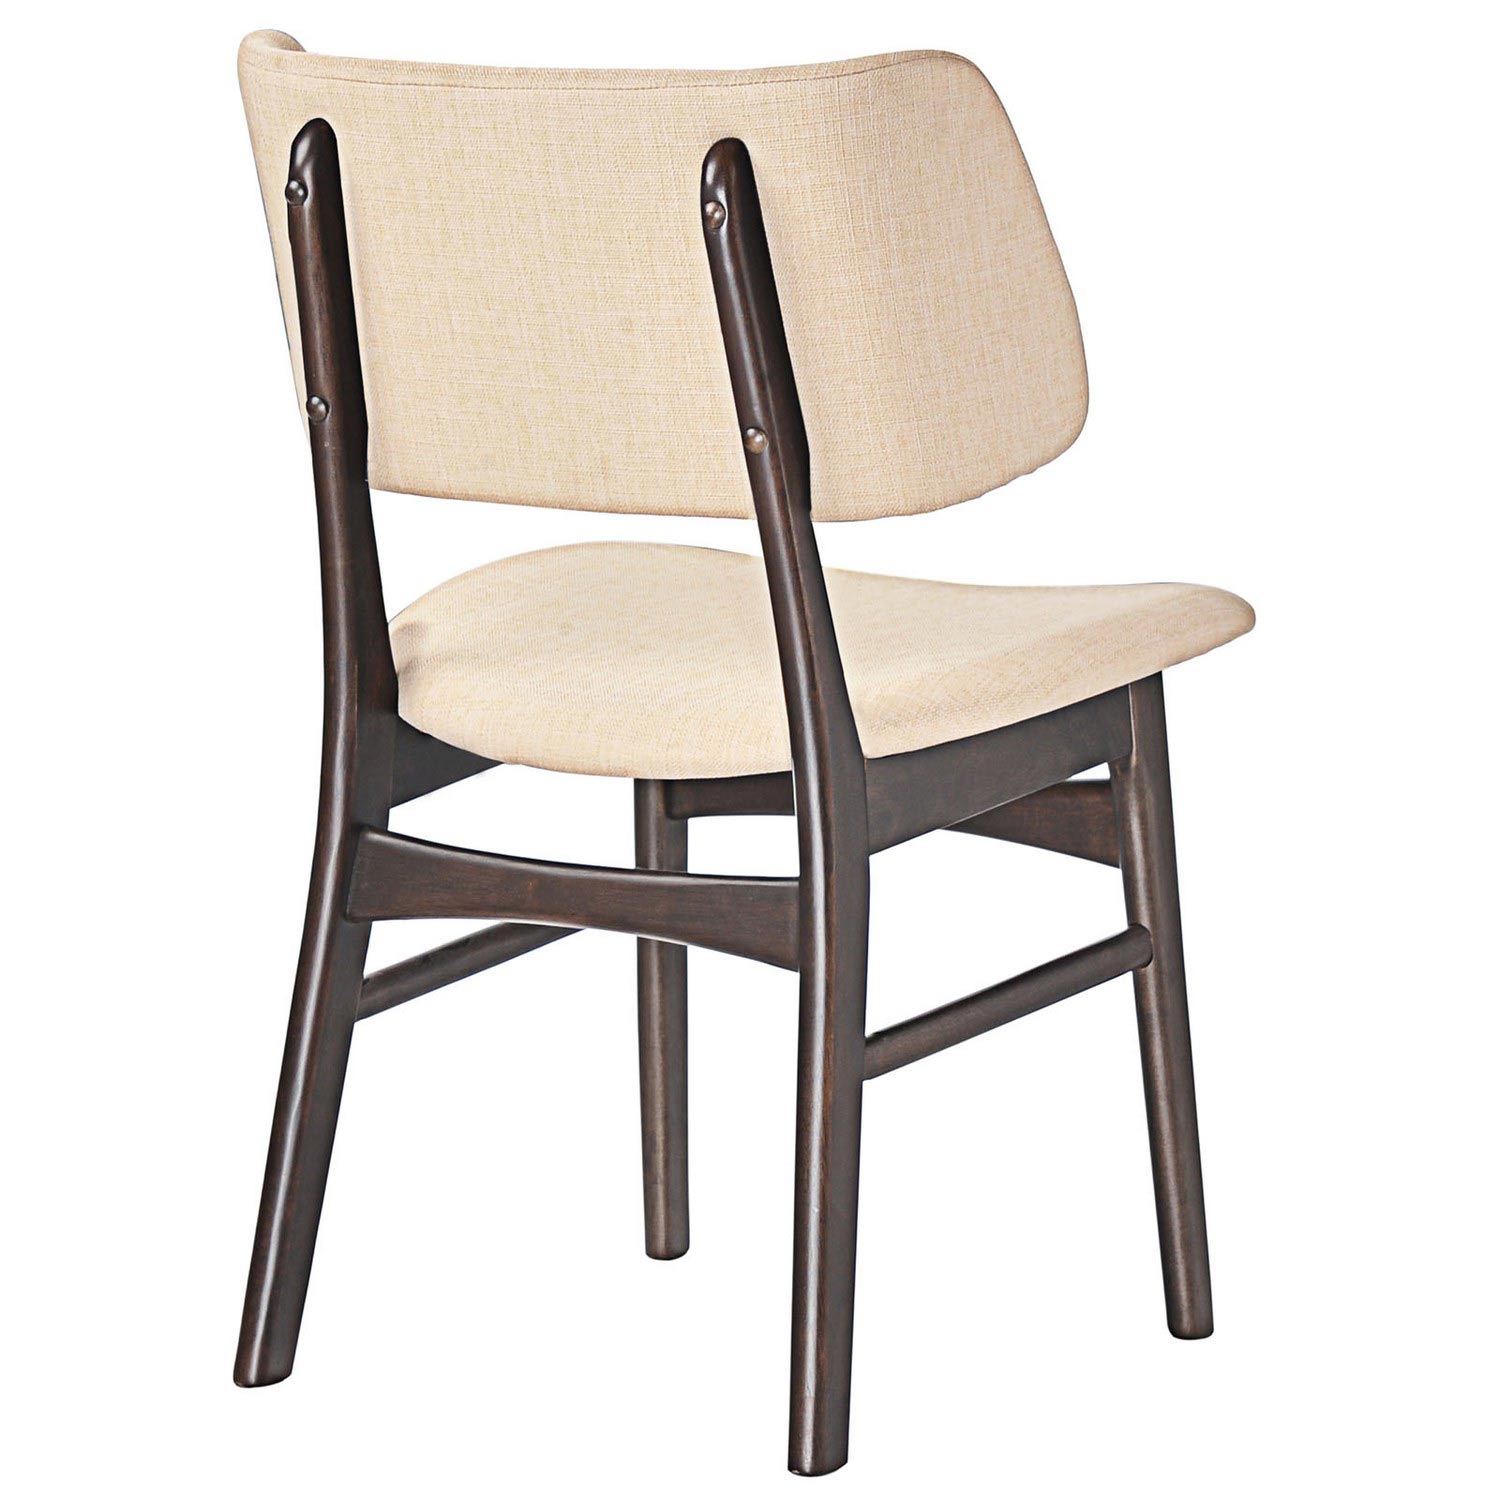 Modway Vestige Dining Side Chair - Walnut Beige